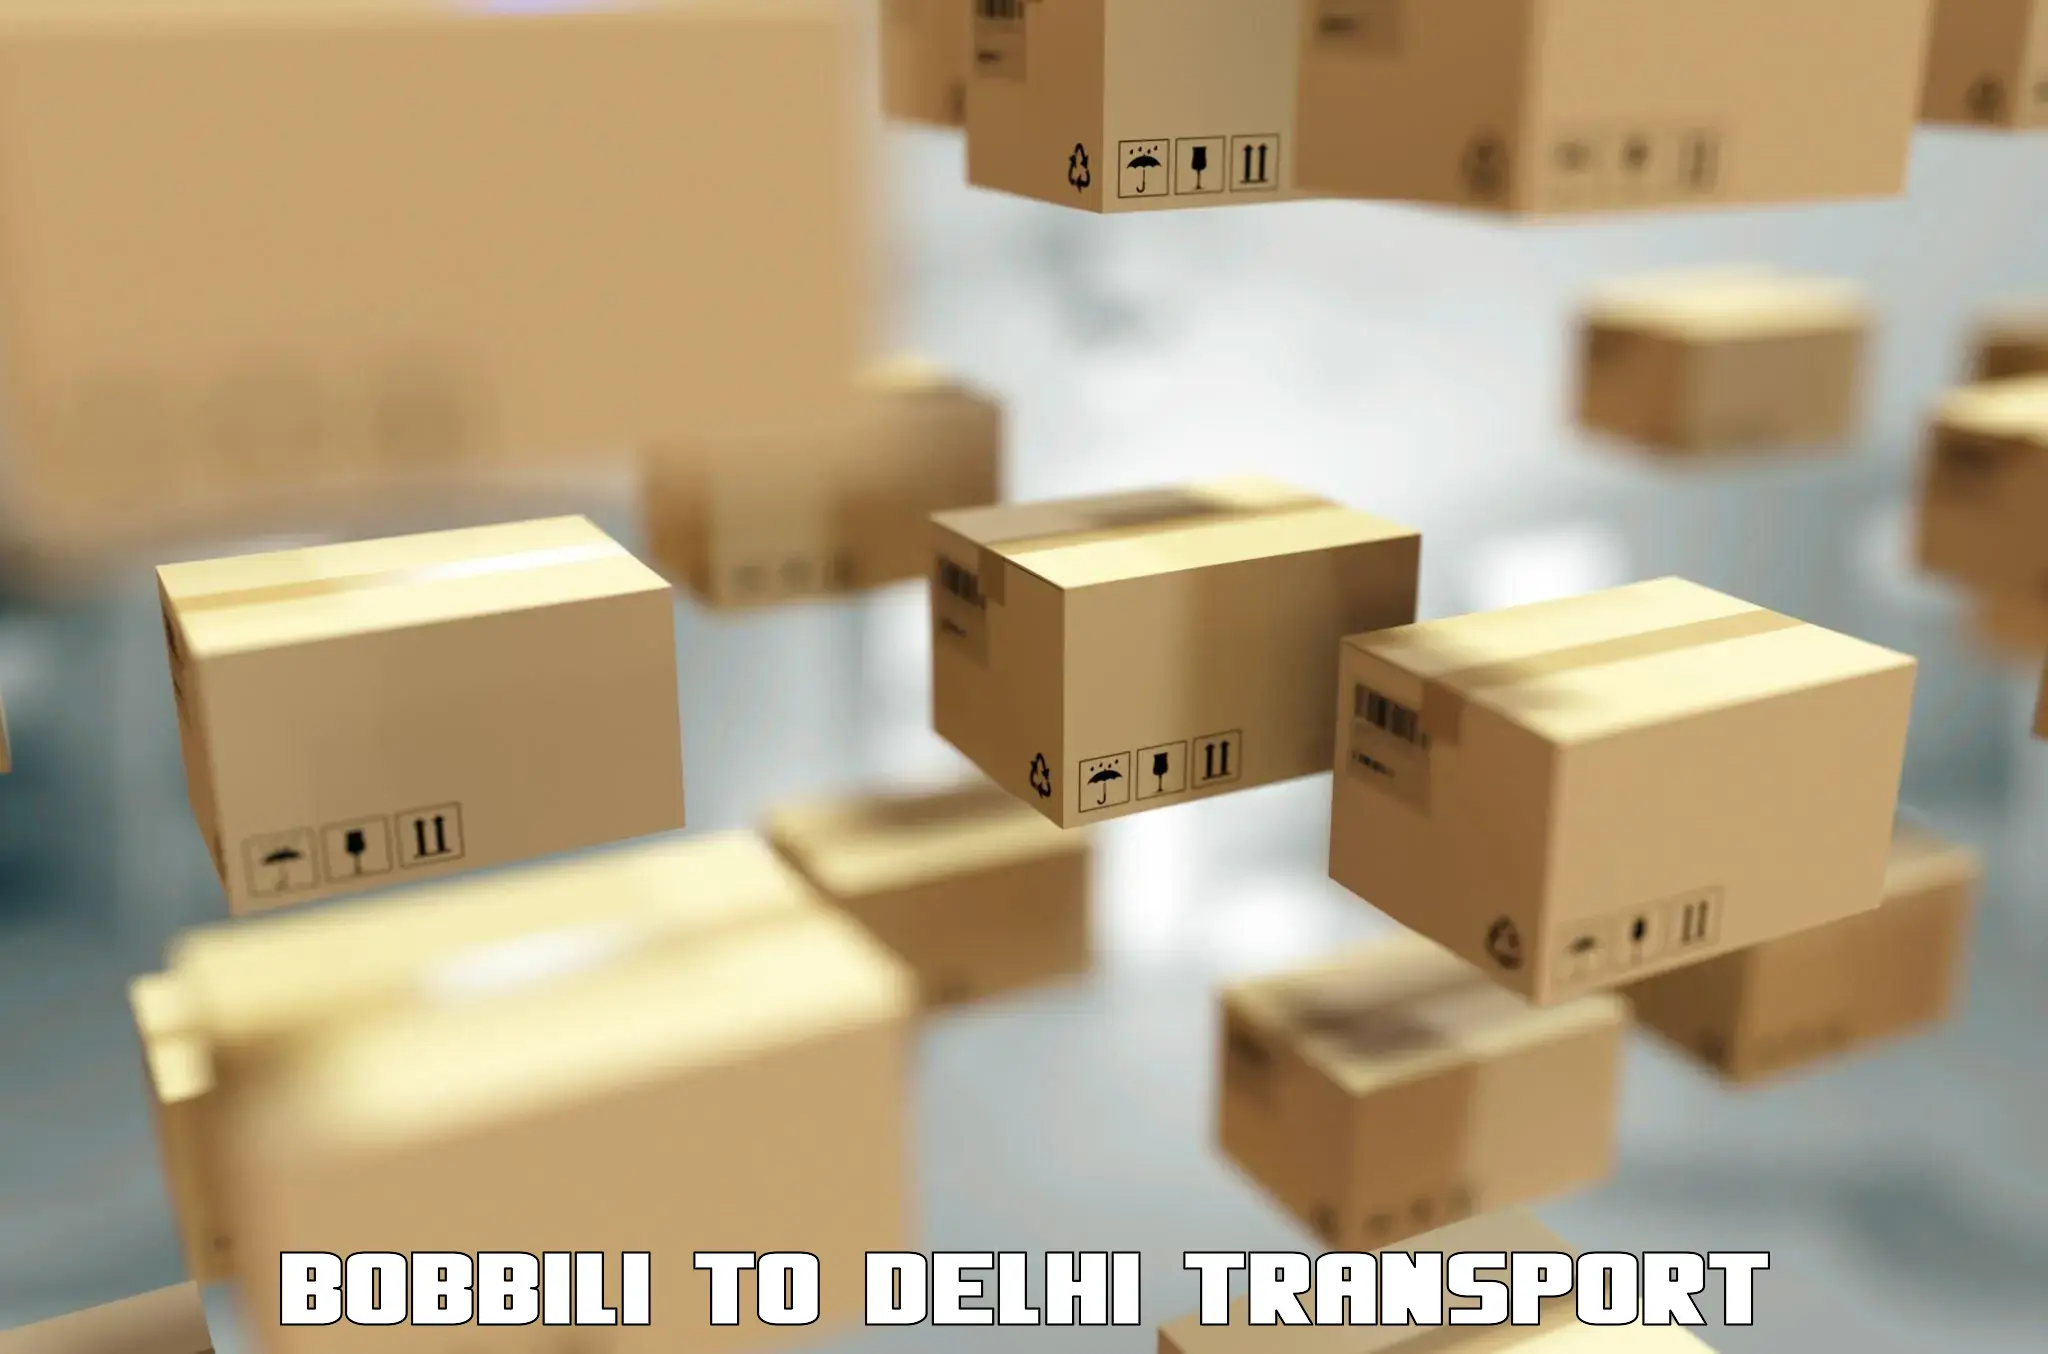 Nearest transport service Bobbili to Kalkaji